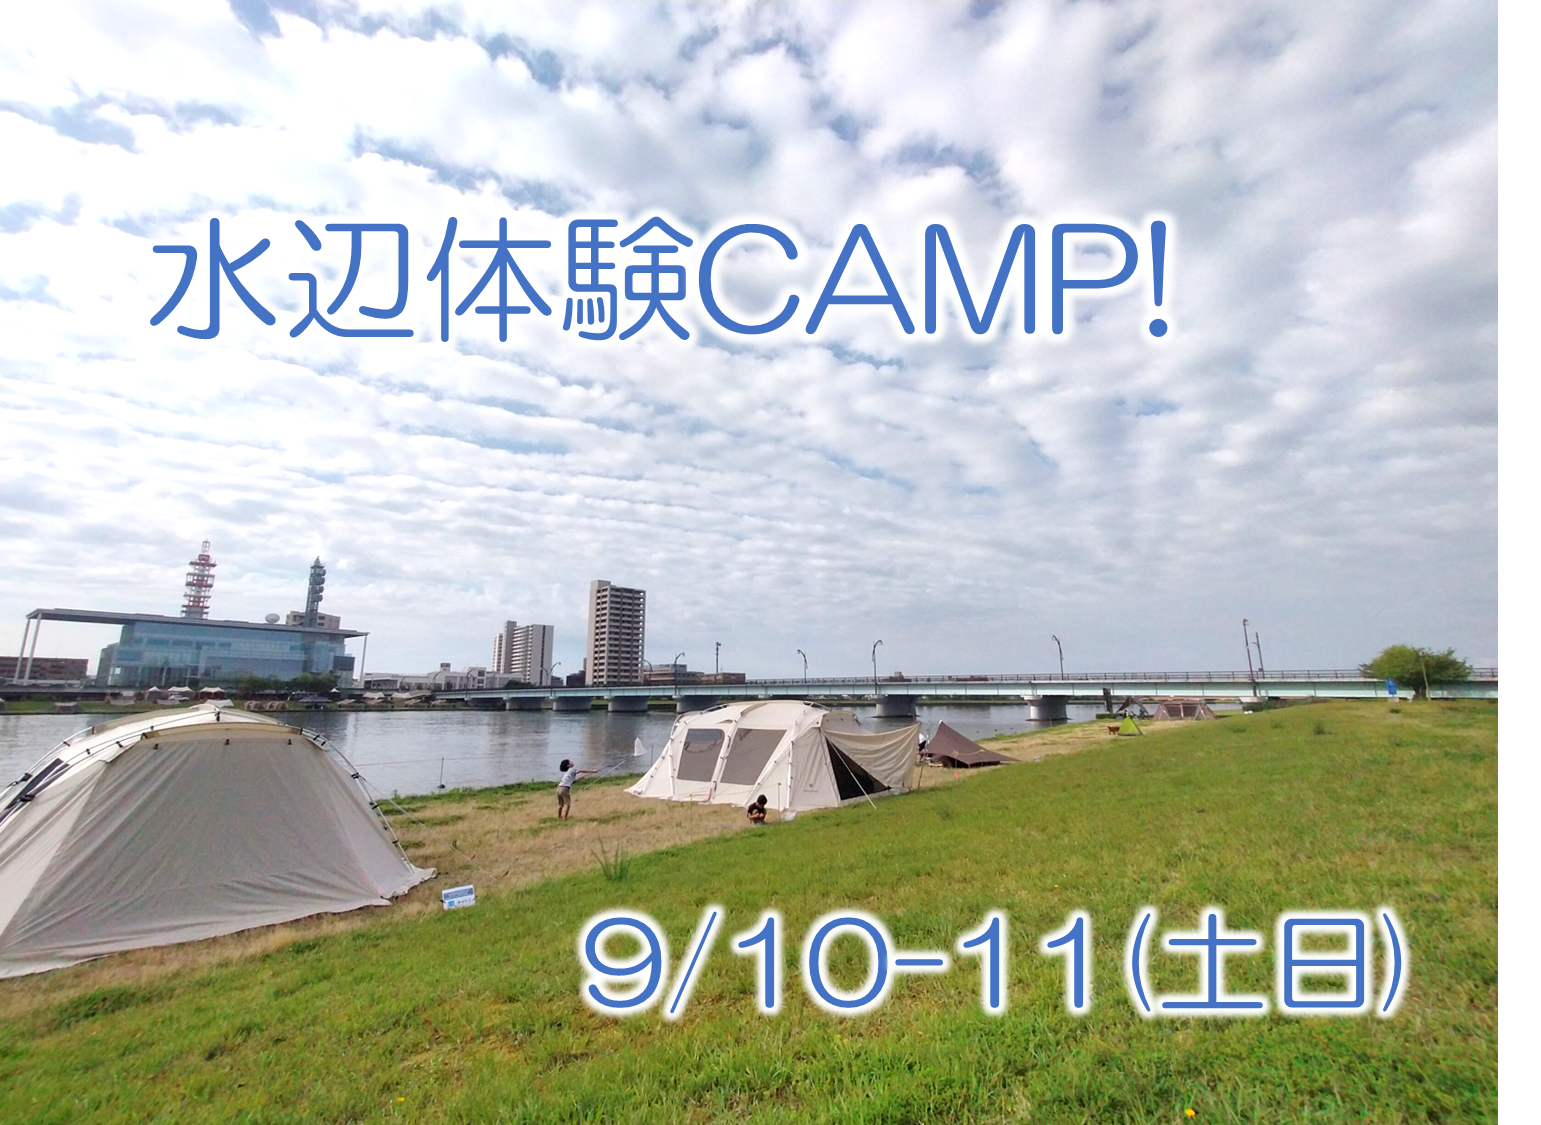 9月10-11日 水辺体験CAMP開催！参加者募集